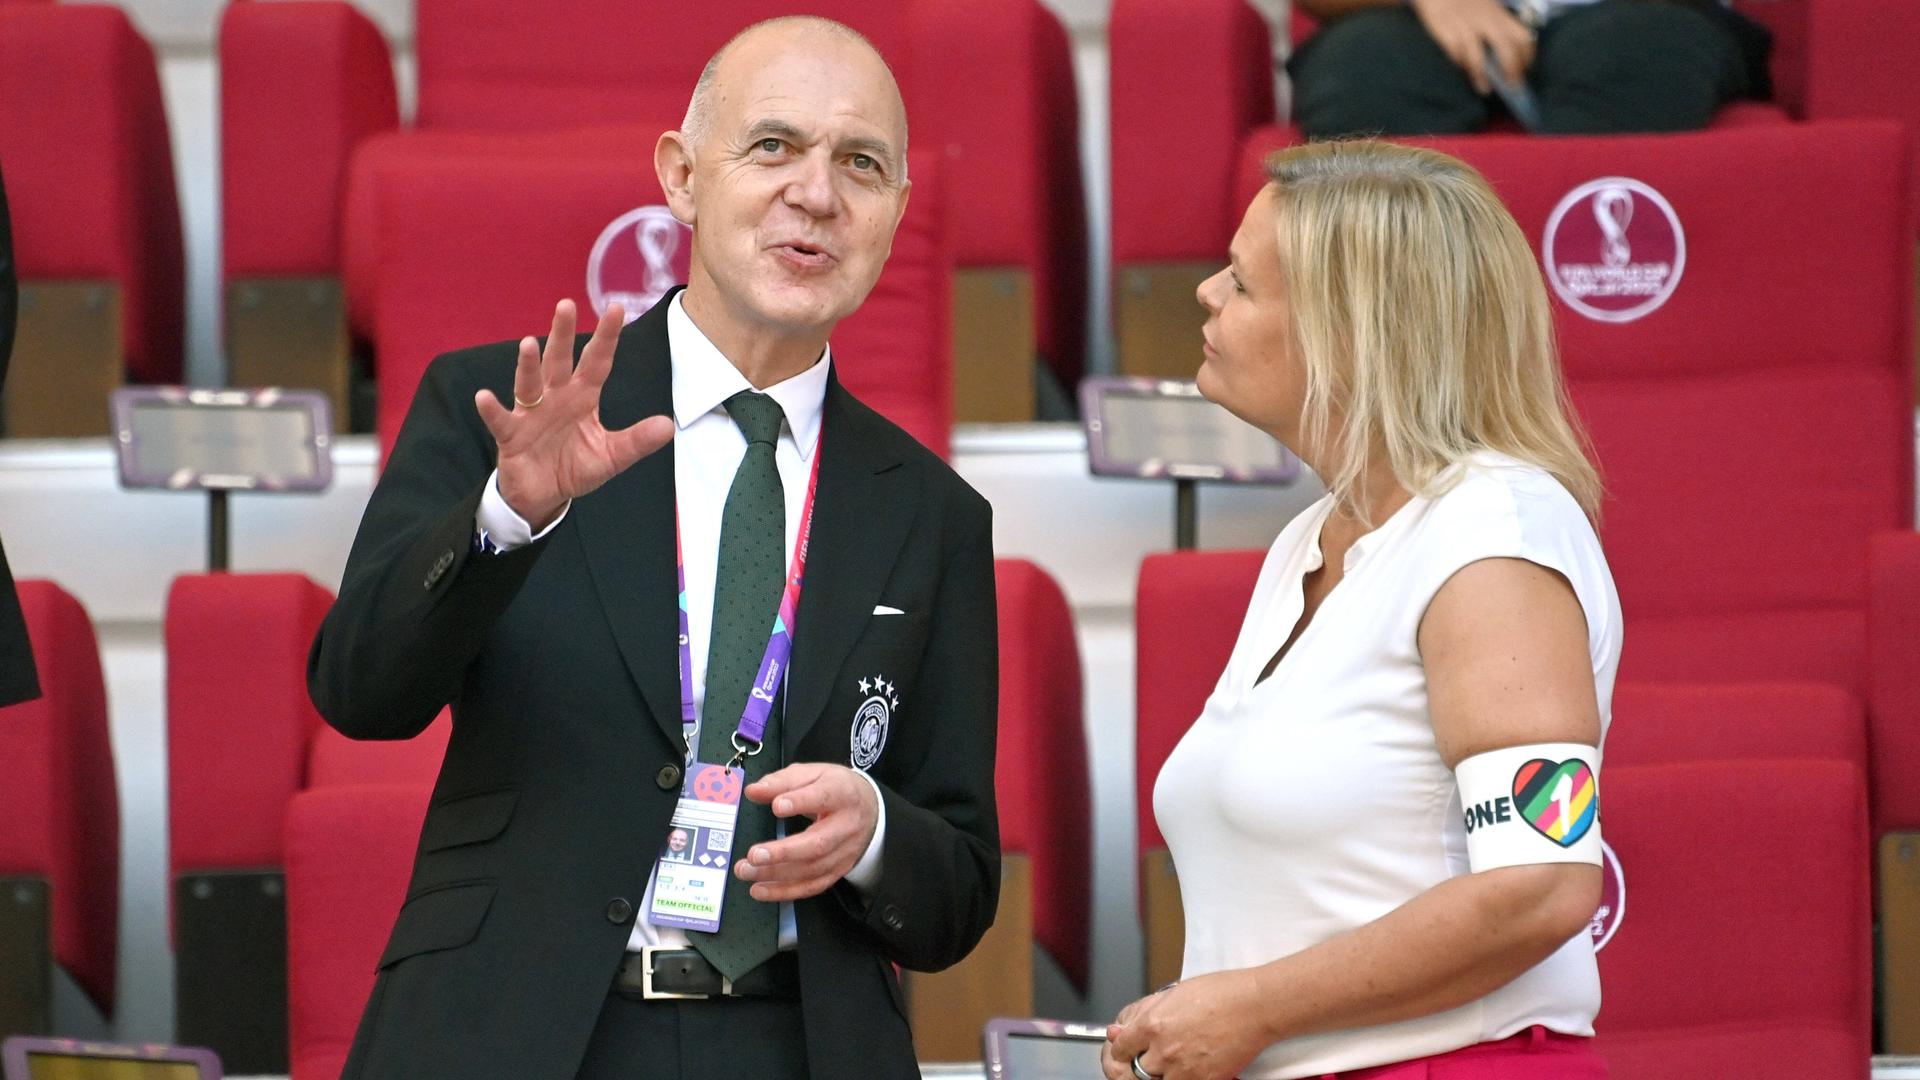 DFB-Präsident Bernd Neuendorf (l.) mit Bundeninnenministerin Nancy Faeser (SPD) bei der Fußball-WM in Katar 2022. Auch Neuendordf ist SPD-Mitglied.